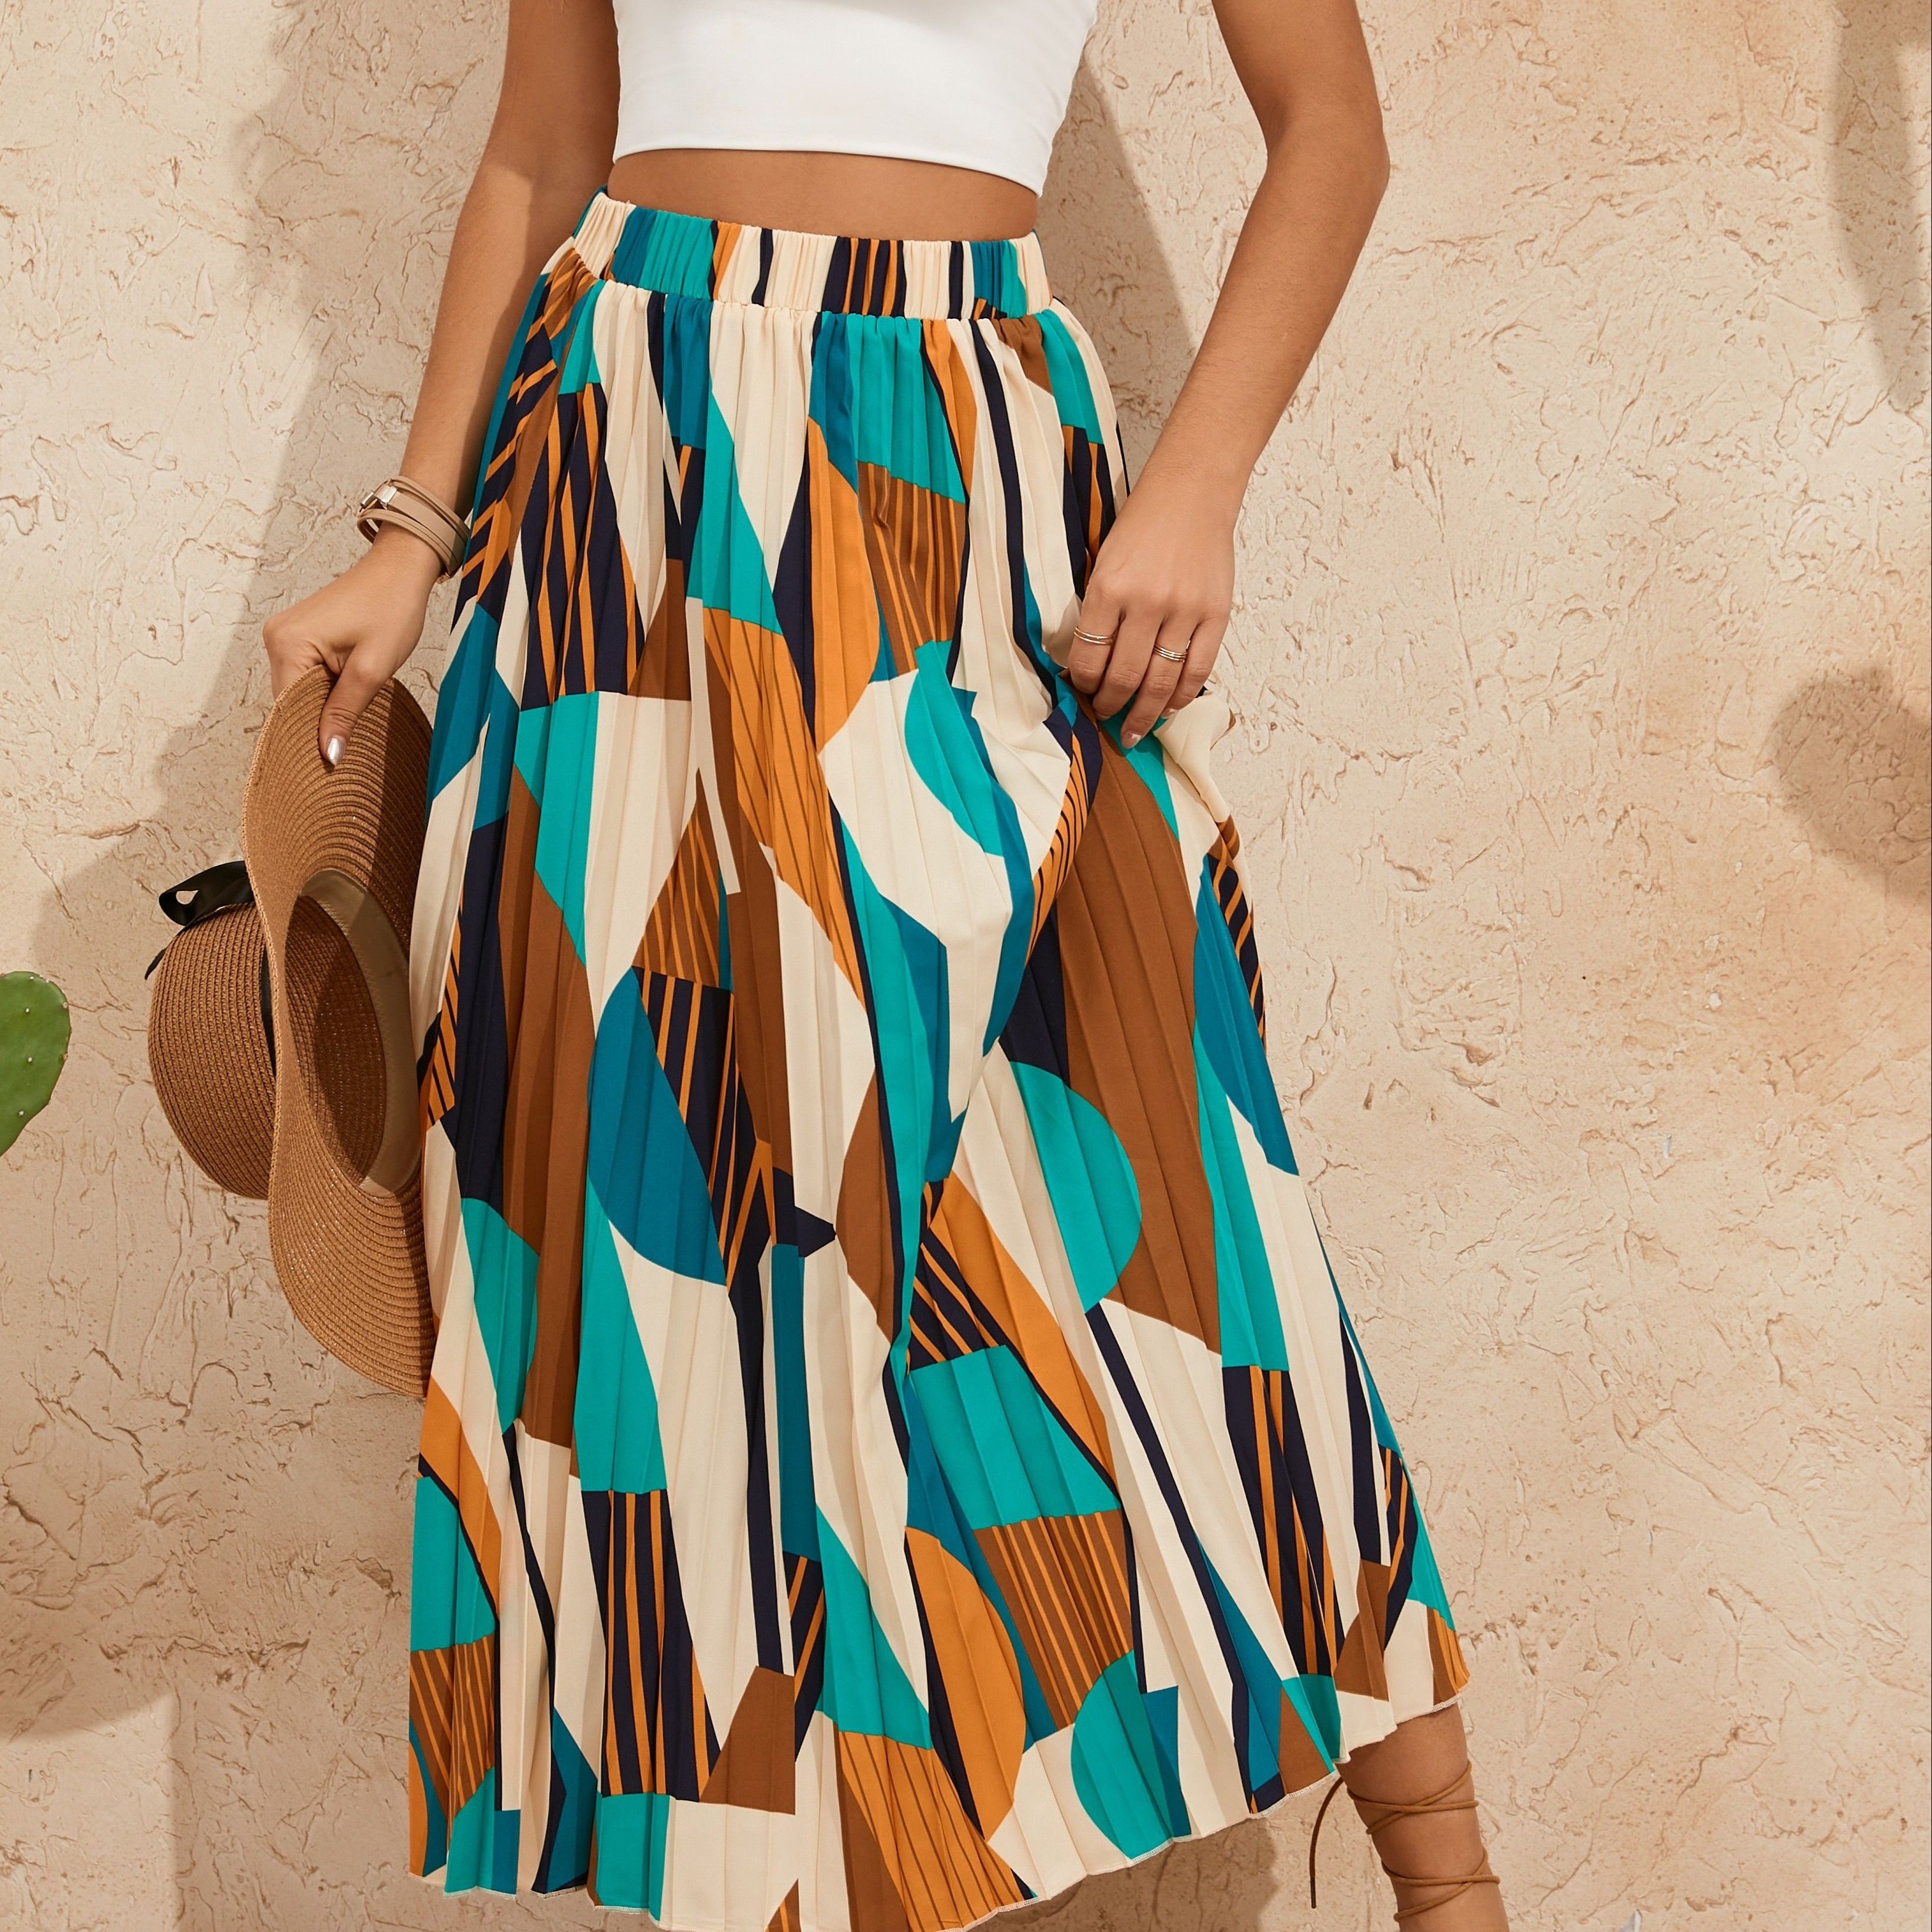 

Geo Print High Waist Skirt, Elegant Pleated A-line Skirt For Spring & Summer, Women's Clothing